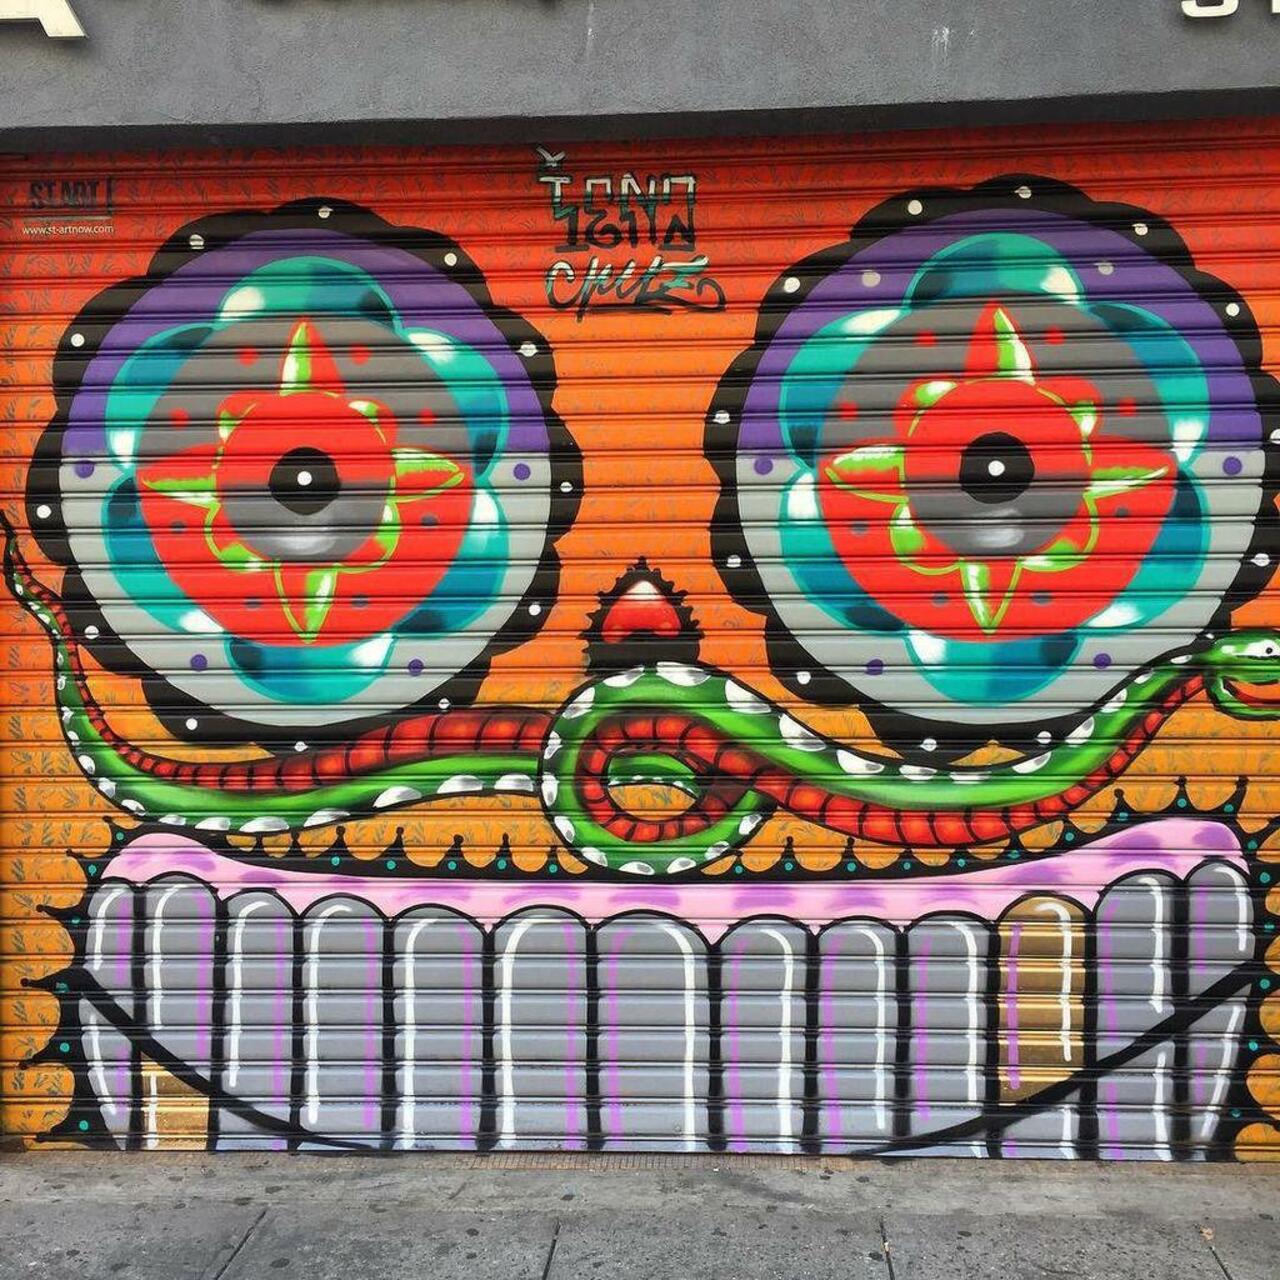 #les #lowereastside #nyc #streetartnyc #streetart #graff #graffiti #graff #graffiti #mural http://ift.tt/1LM2Ih8 http://t.co/hWYadeTqJb